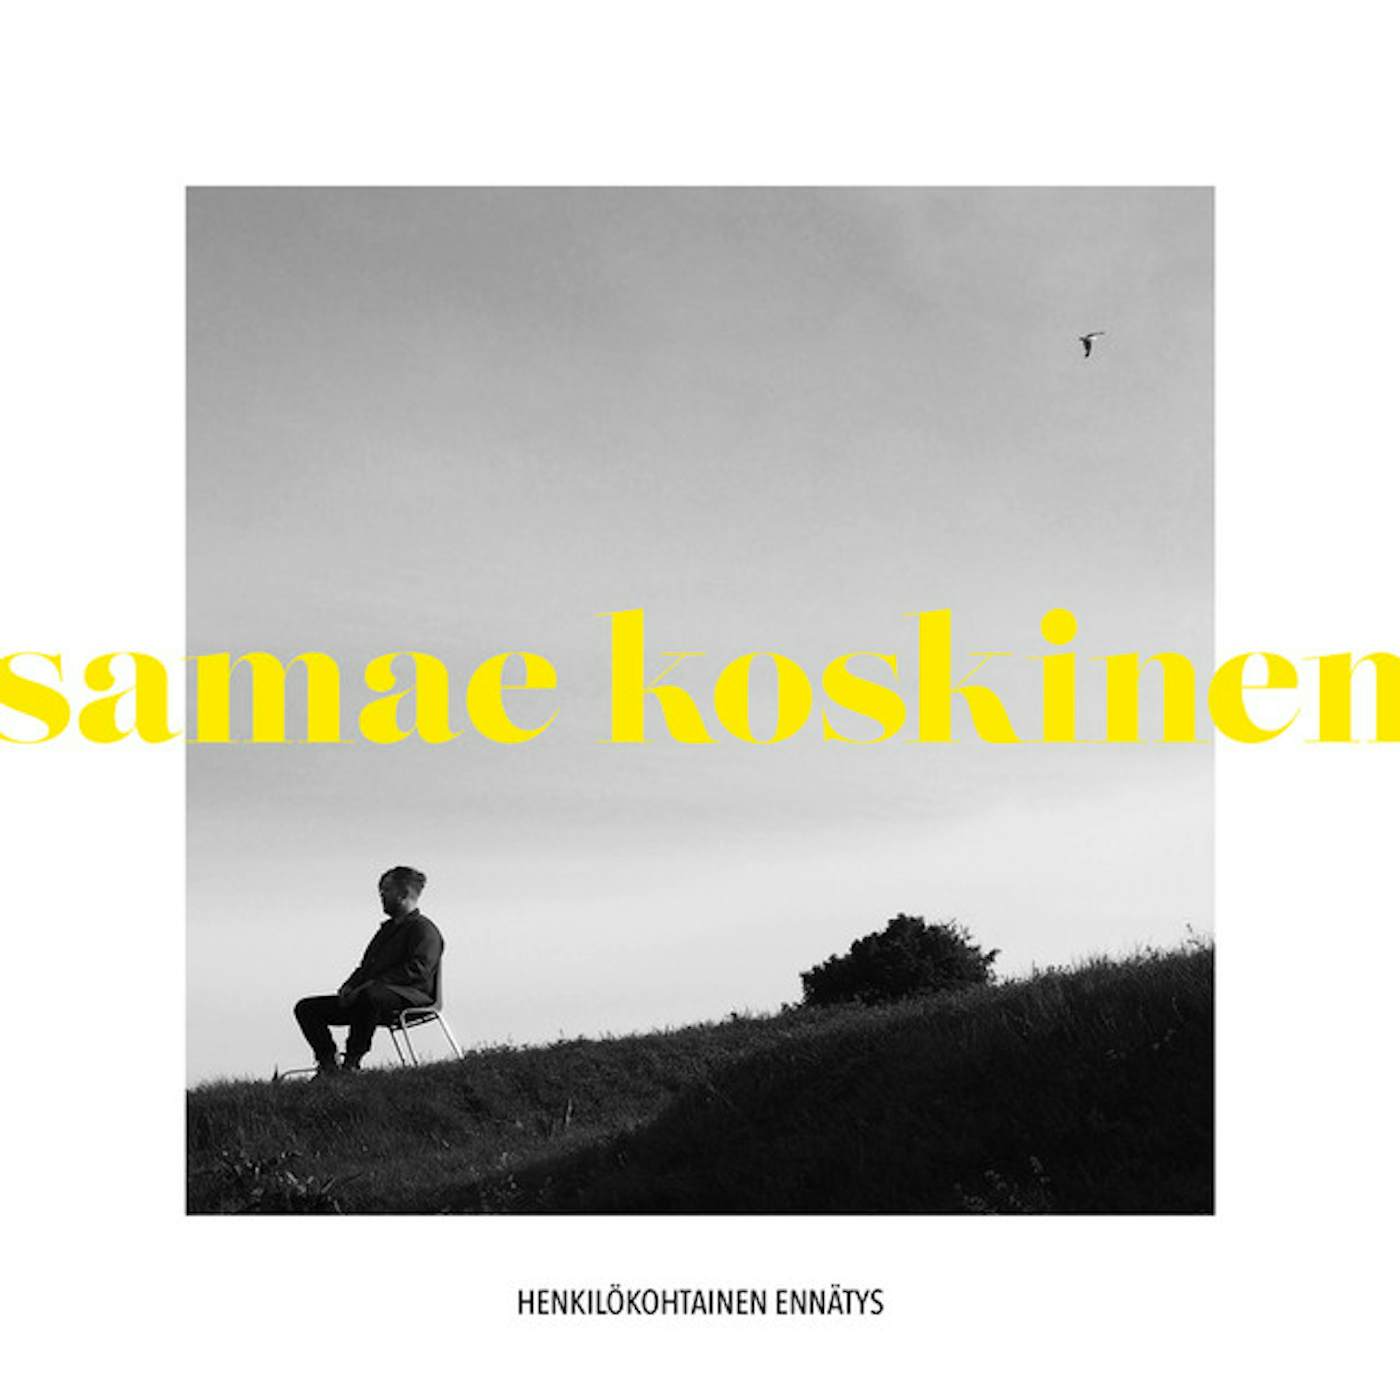 Samae Koskinen HENKILOKOHTAINEN ENNATYS Vinyl Record